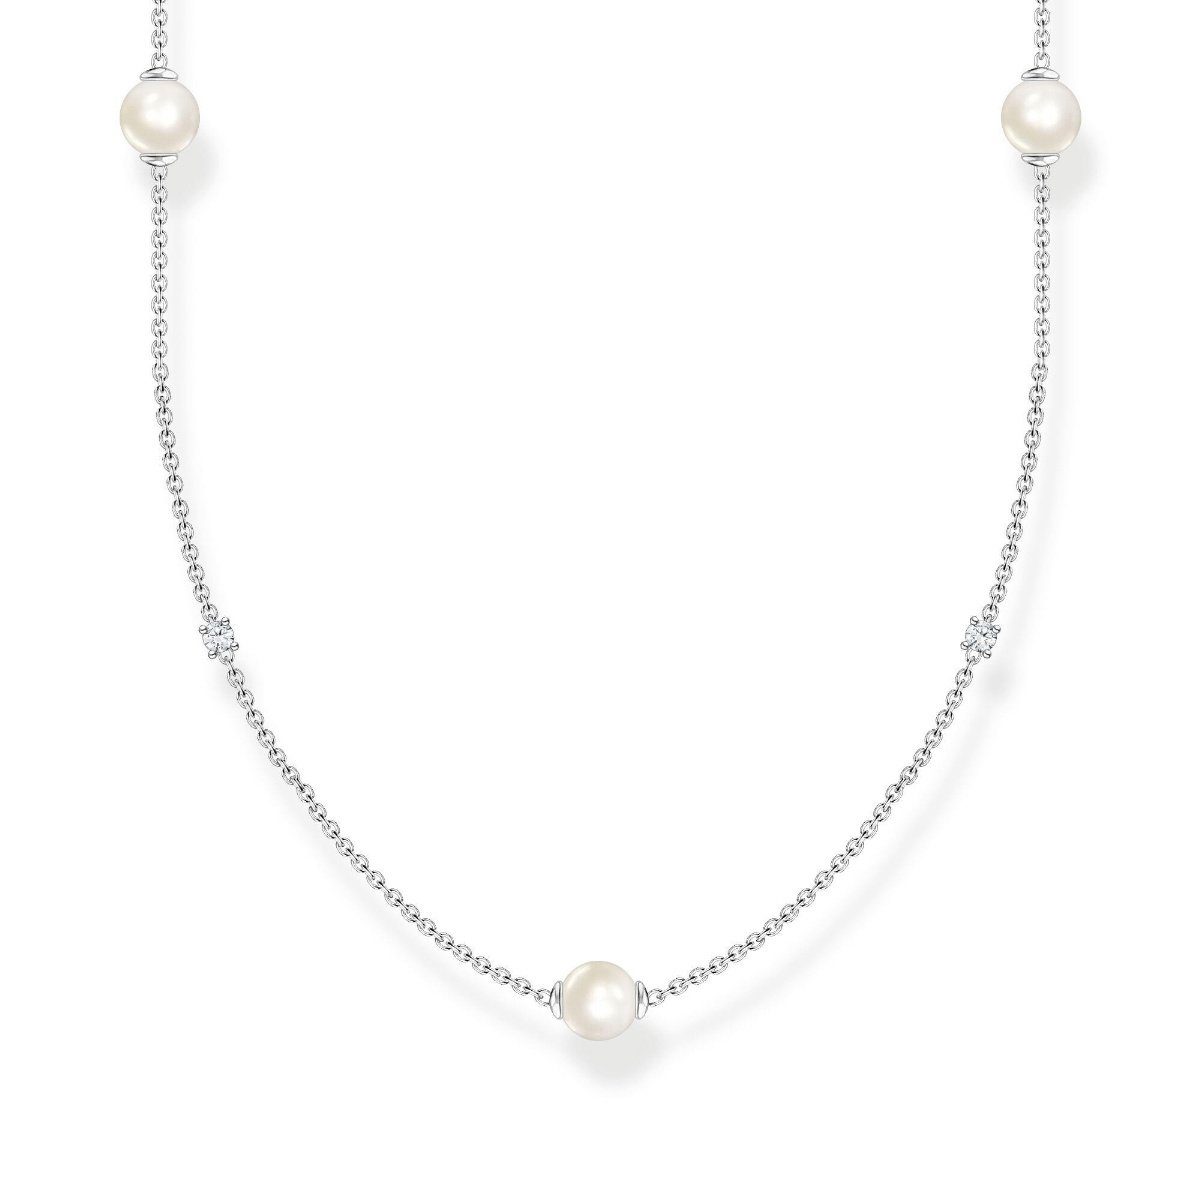 THOMAS SABO Silberkette Kette Perlen mit weißen Steinen silber 90cm